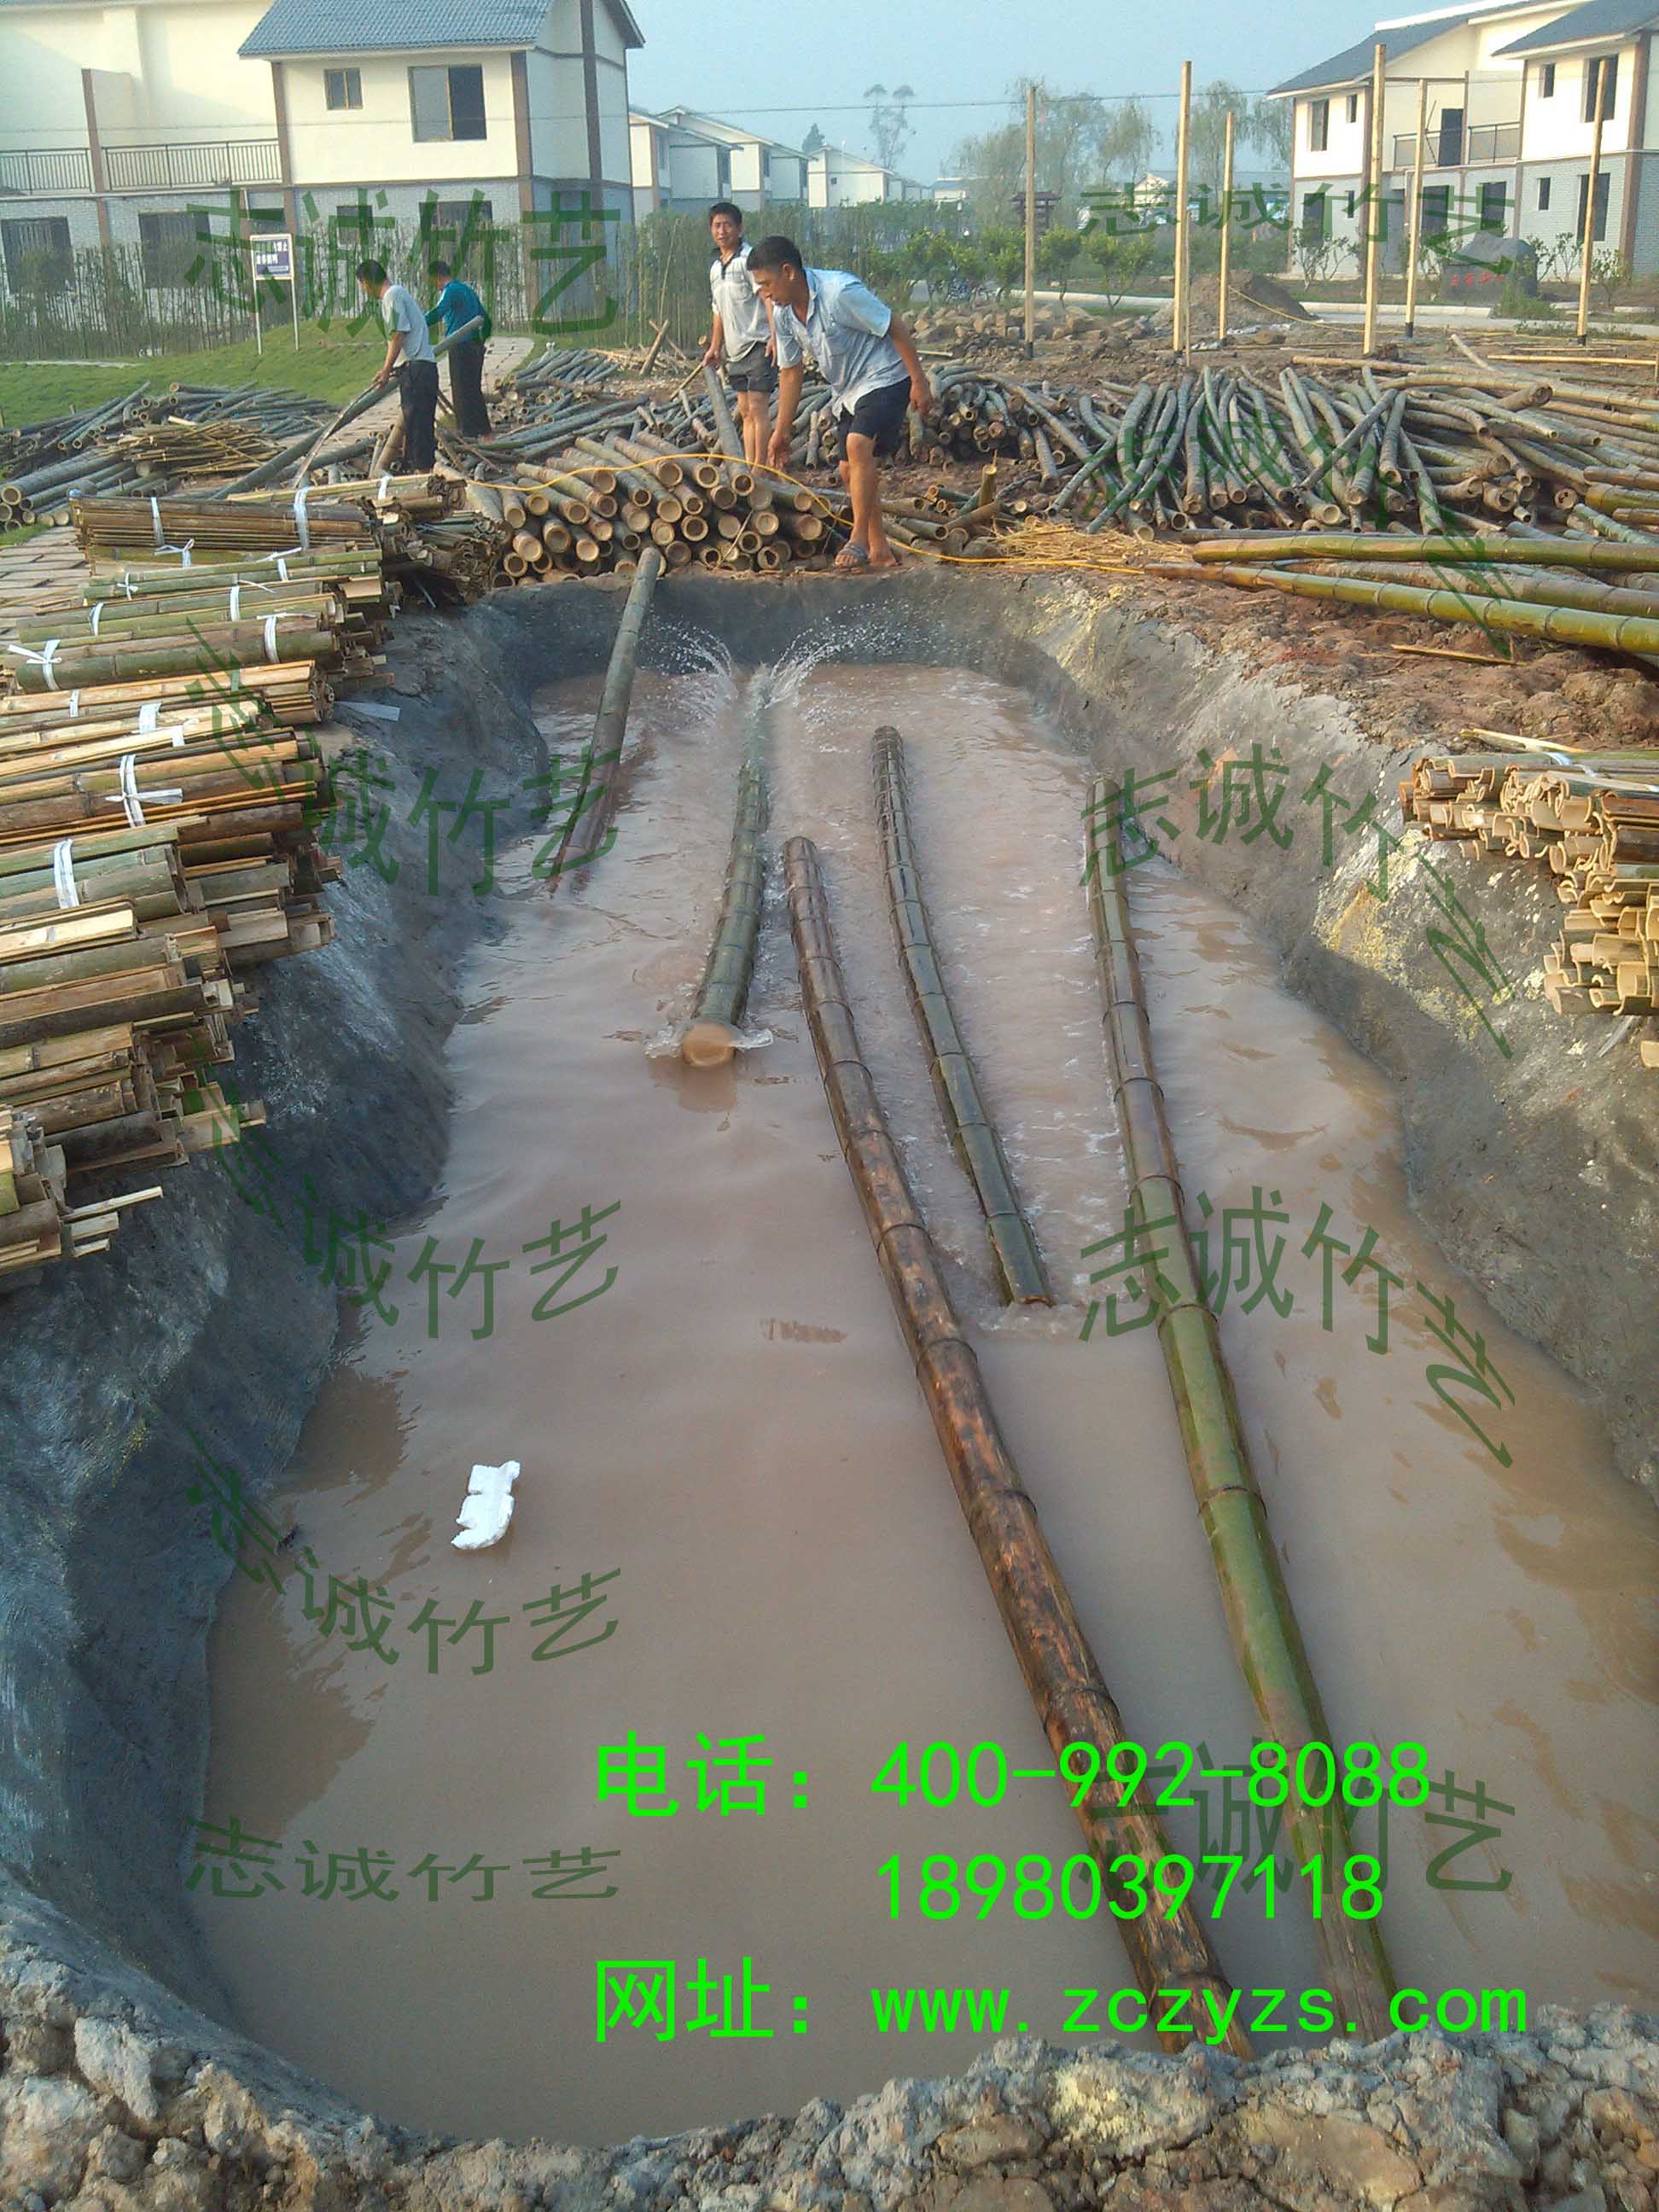  竹材枓在现场用药水进行 防腐 防虫 防霉处里